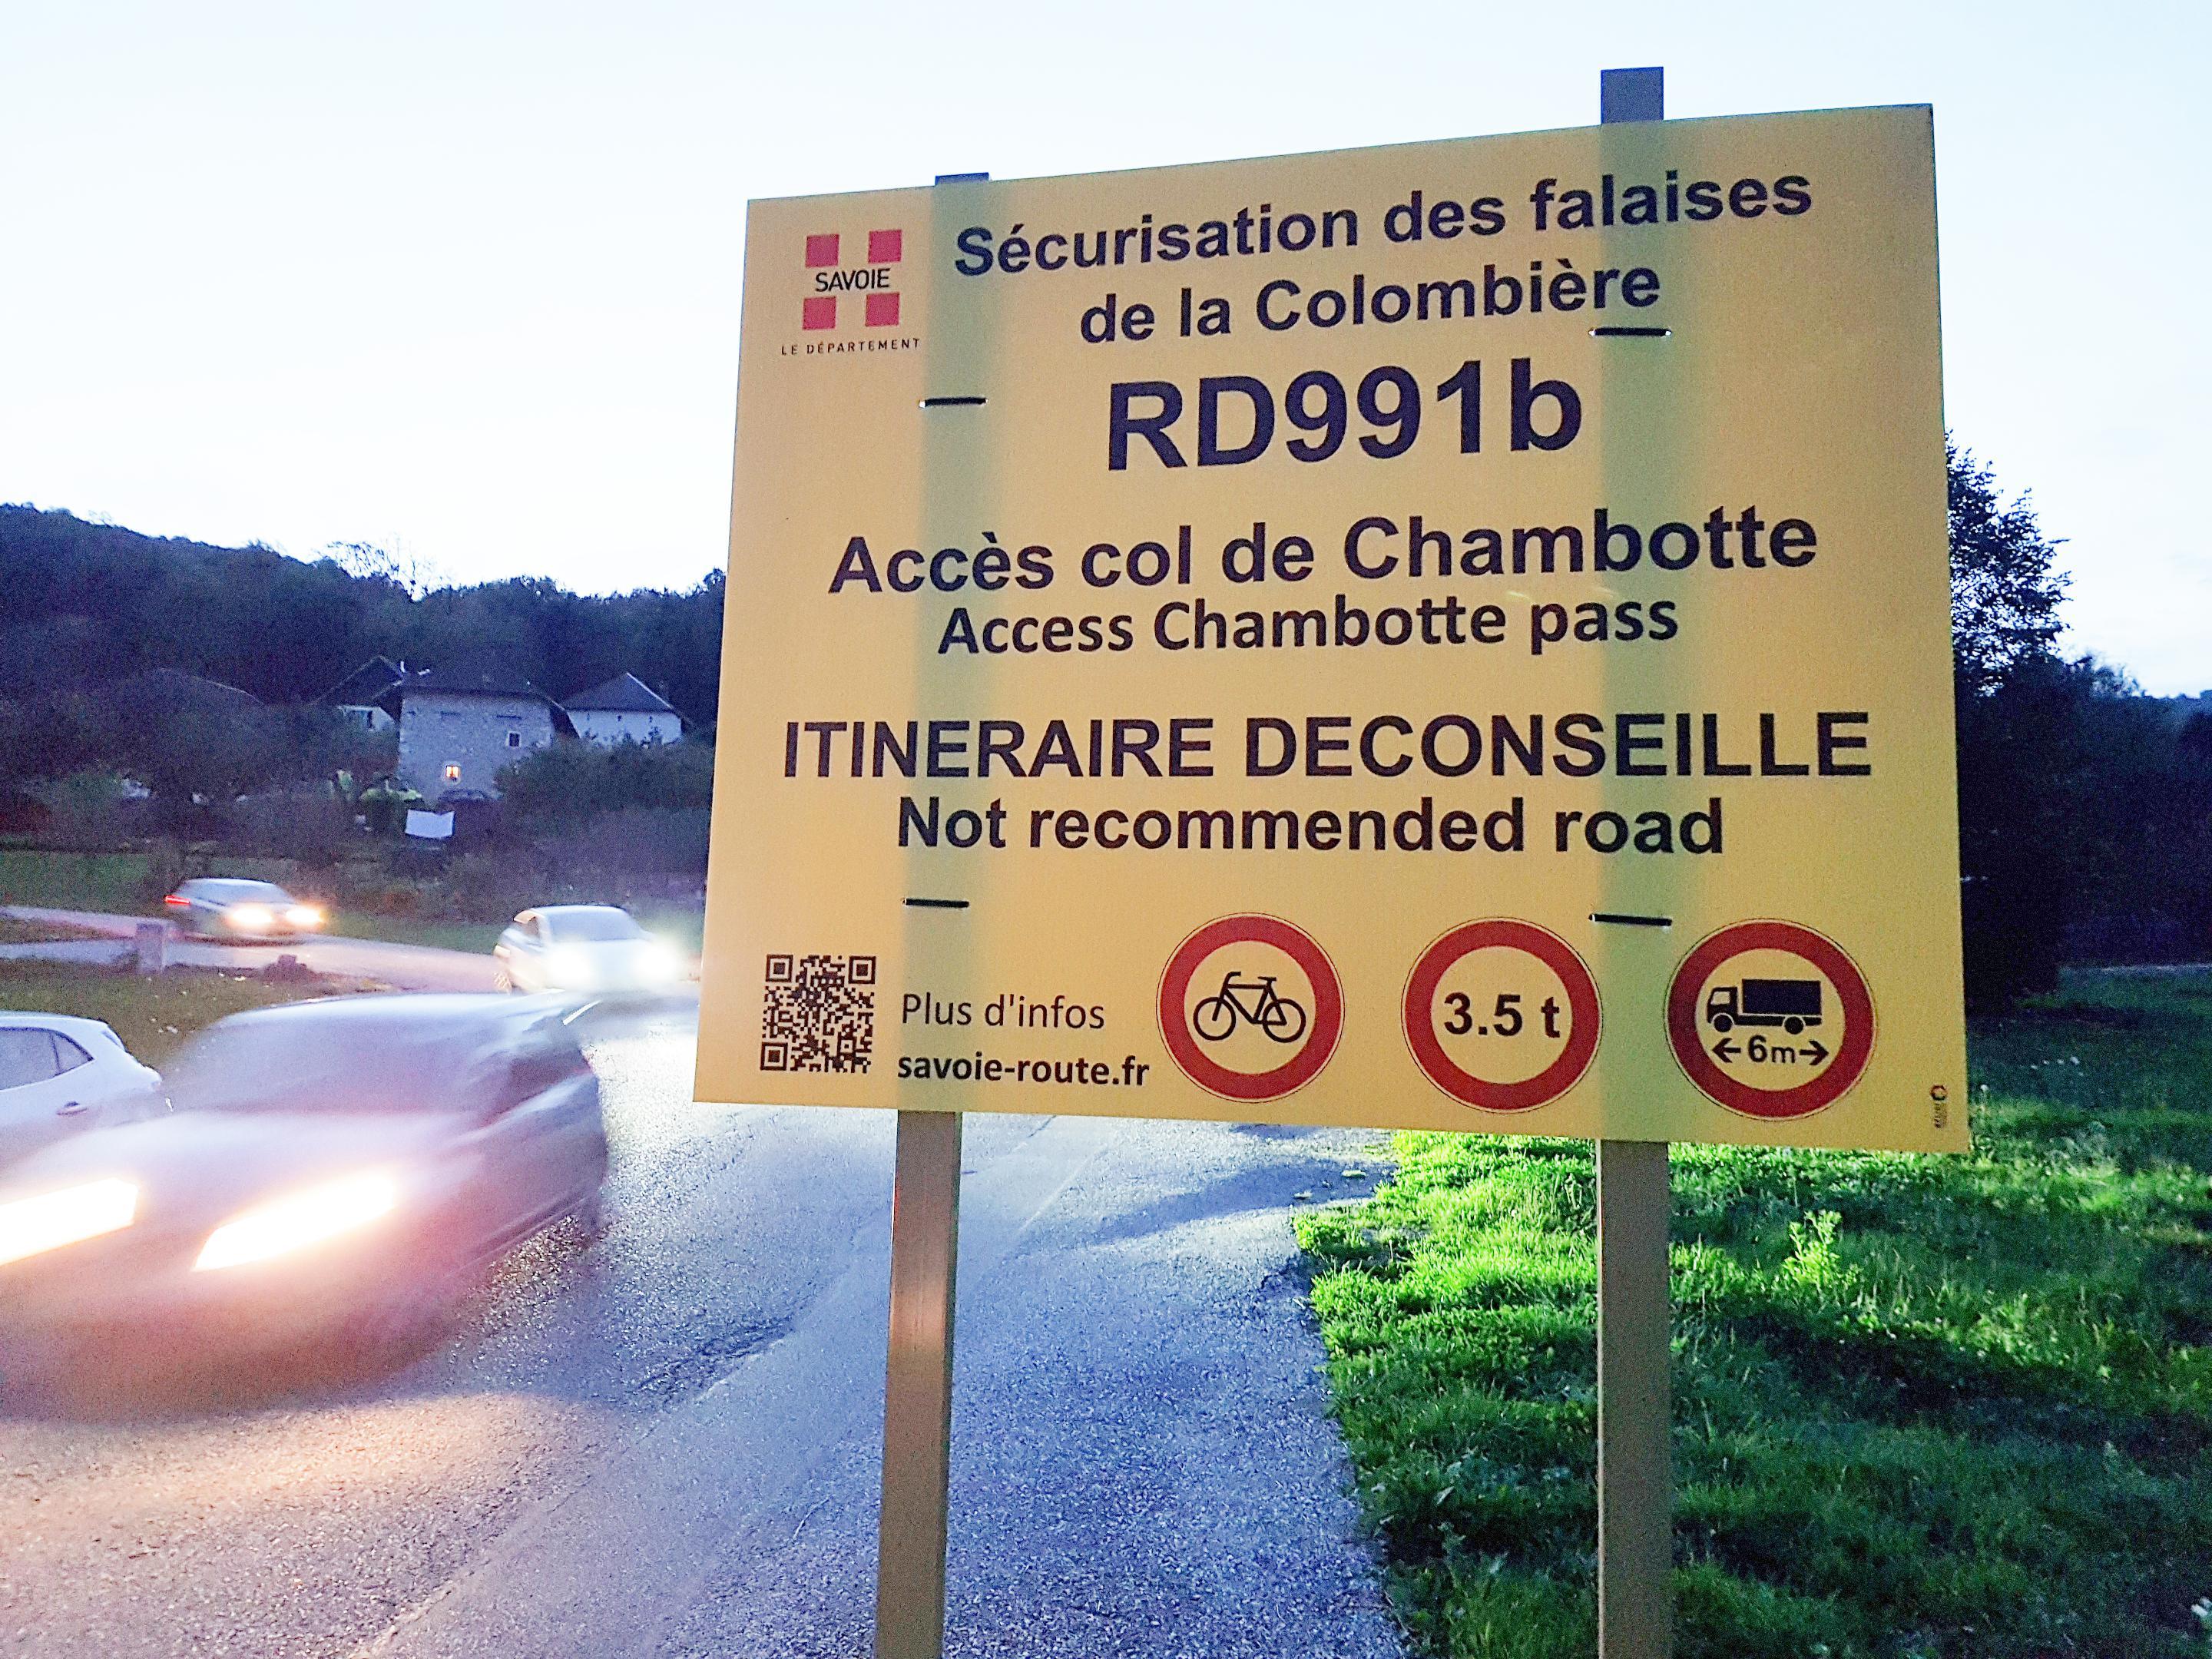 Déconseillé aux voitures, le col de la Chambotte est aussi interdit aux cyclistes et poids lourds actuellement.